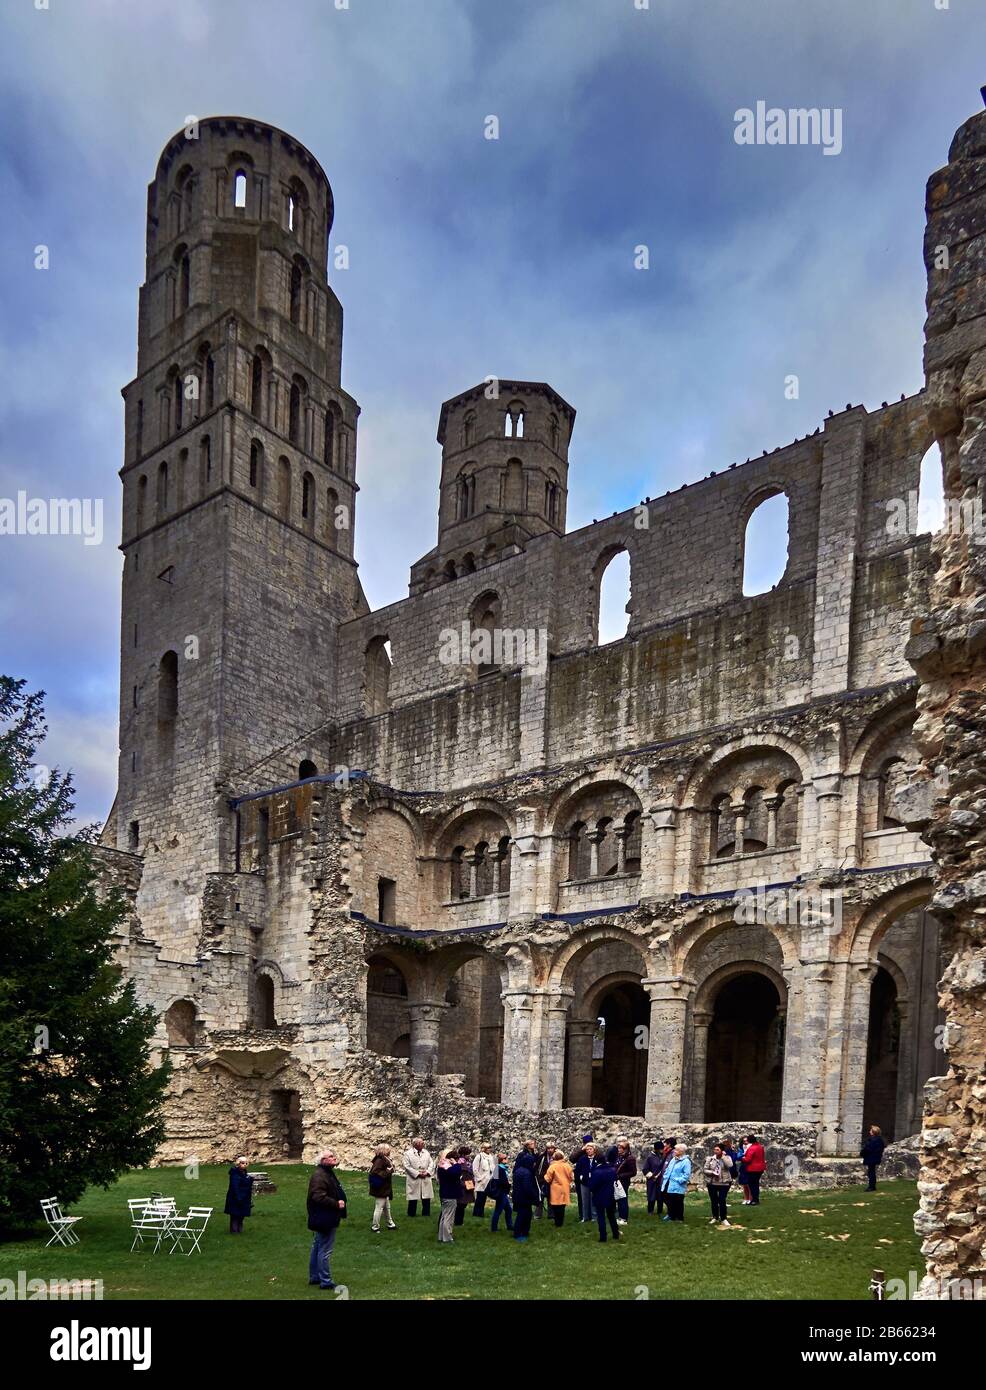 Die Ruinen der Jumièges Abbey waren ein Kloster der Benediktion, das sich in der Stadt Jumièges in der Normandie in Frankreich befindet.654 wurde die Abtei auf einem Geschenk von bewaldetem Land gegründet, das dem königlichen fisc gehört, das Clovis II. Und seine Königin, Balthild, dem fränkischen Adligen Filibertus überreichte. Der die Heiligen Ouen und Wandrille am merowingischen Hof von Dagobert I. begleitet hatte, wurde Philibert der erste Abt Stockfoto